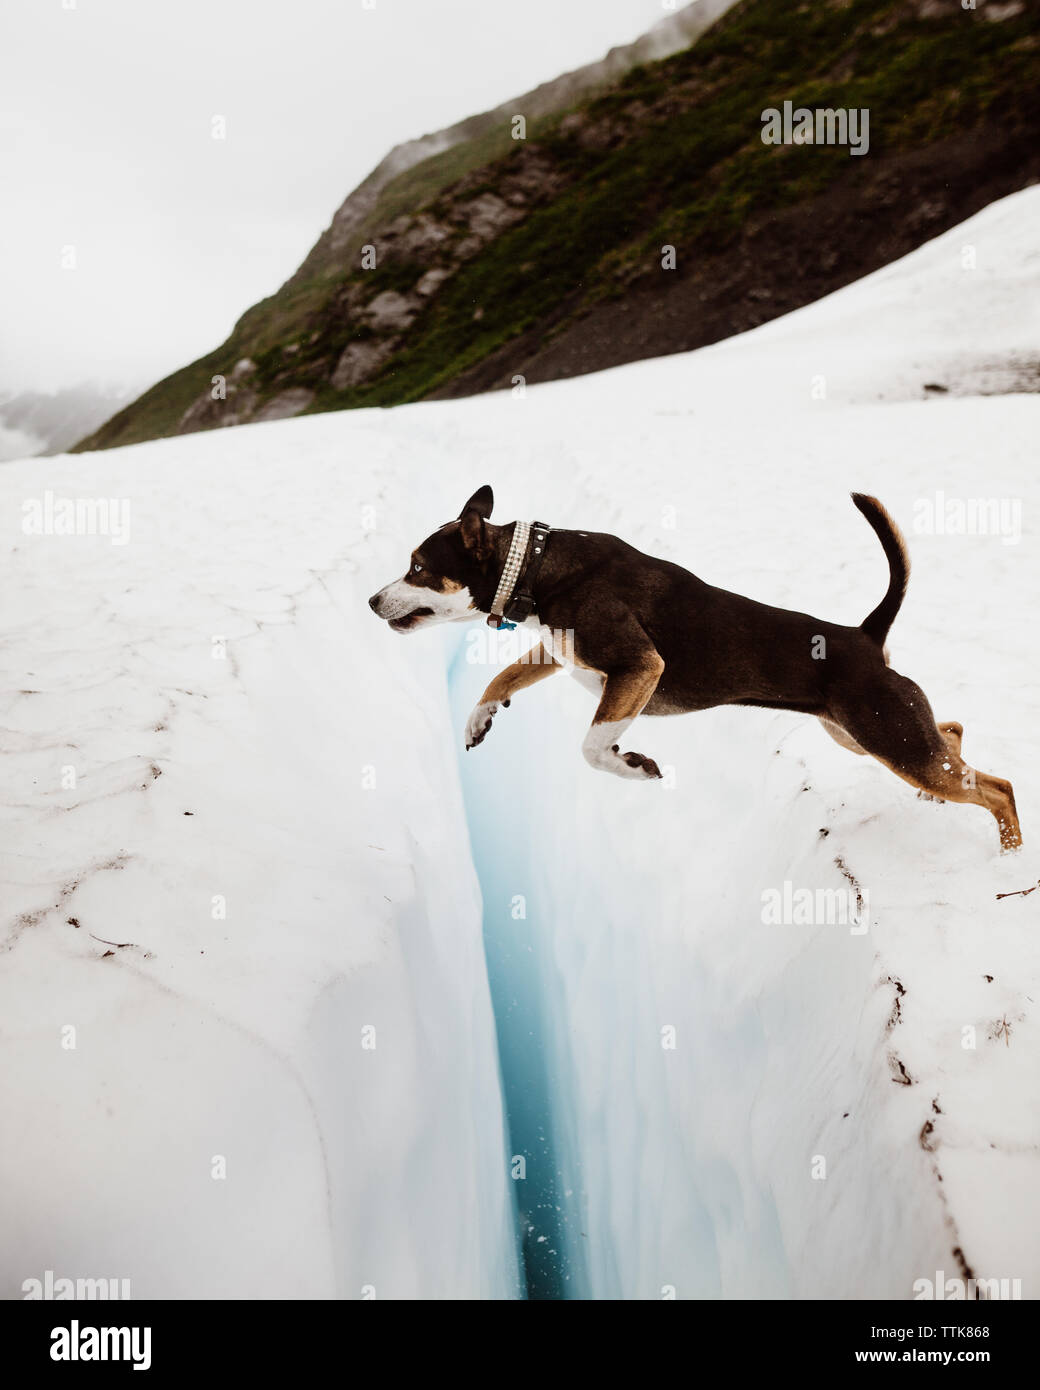 Valiente perro salta a través de una grieta en el hielo de los glaciares de Alaska Foto de stock